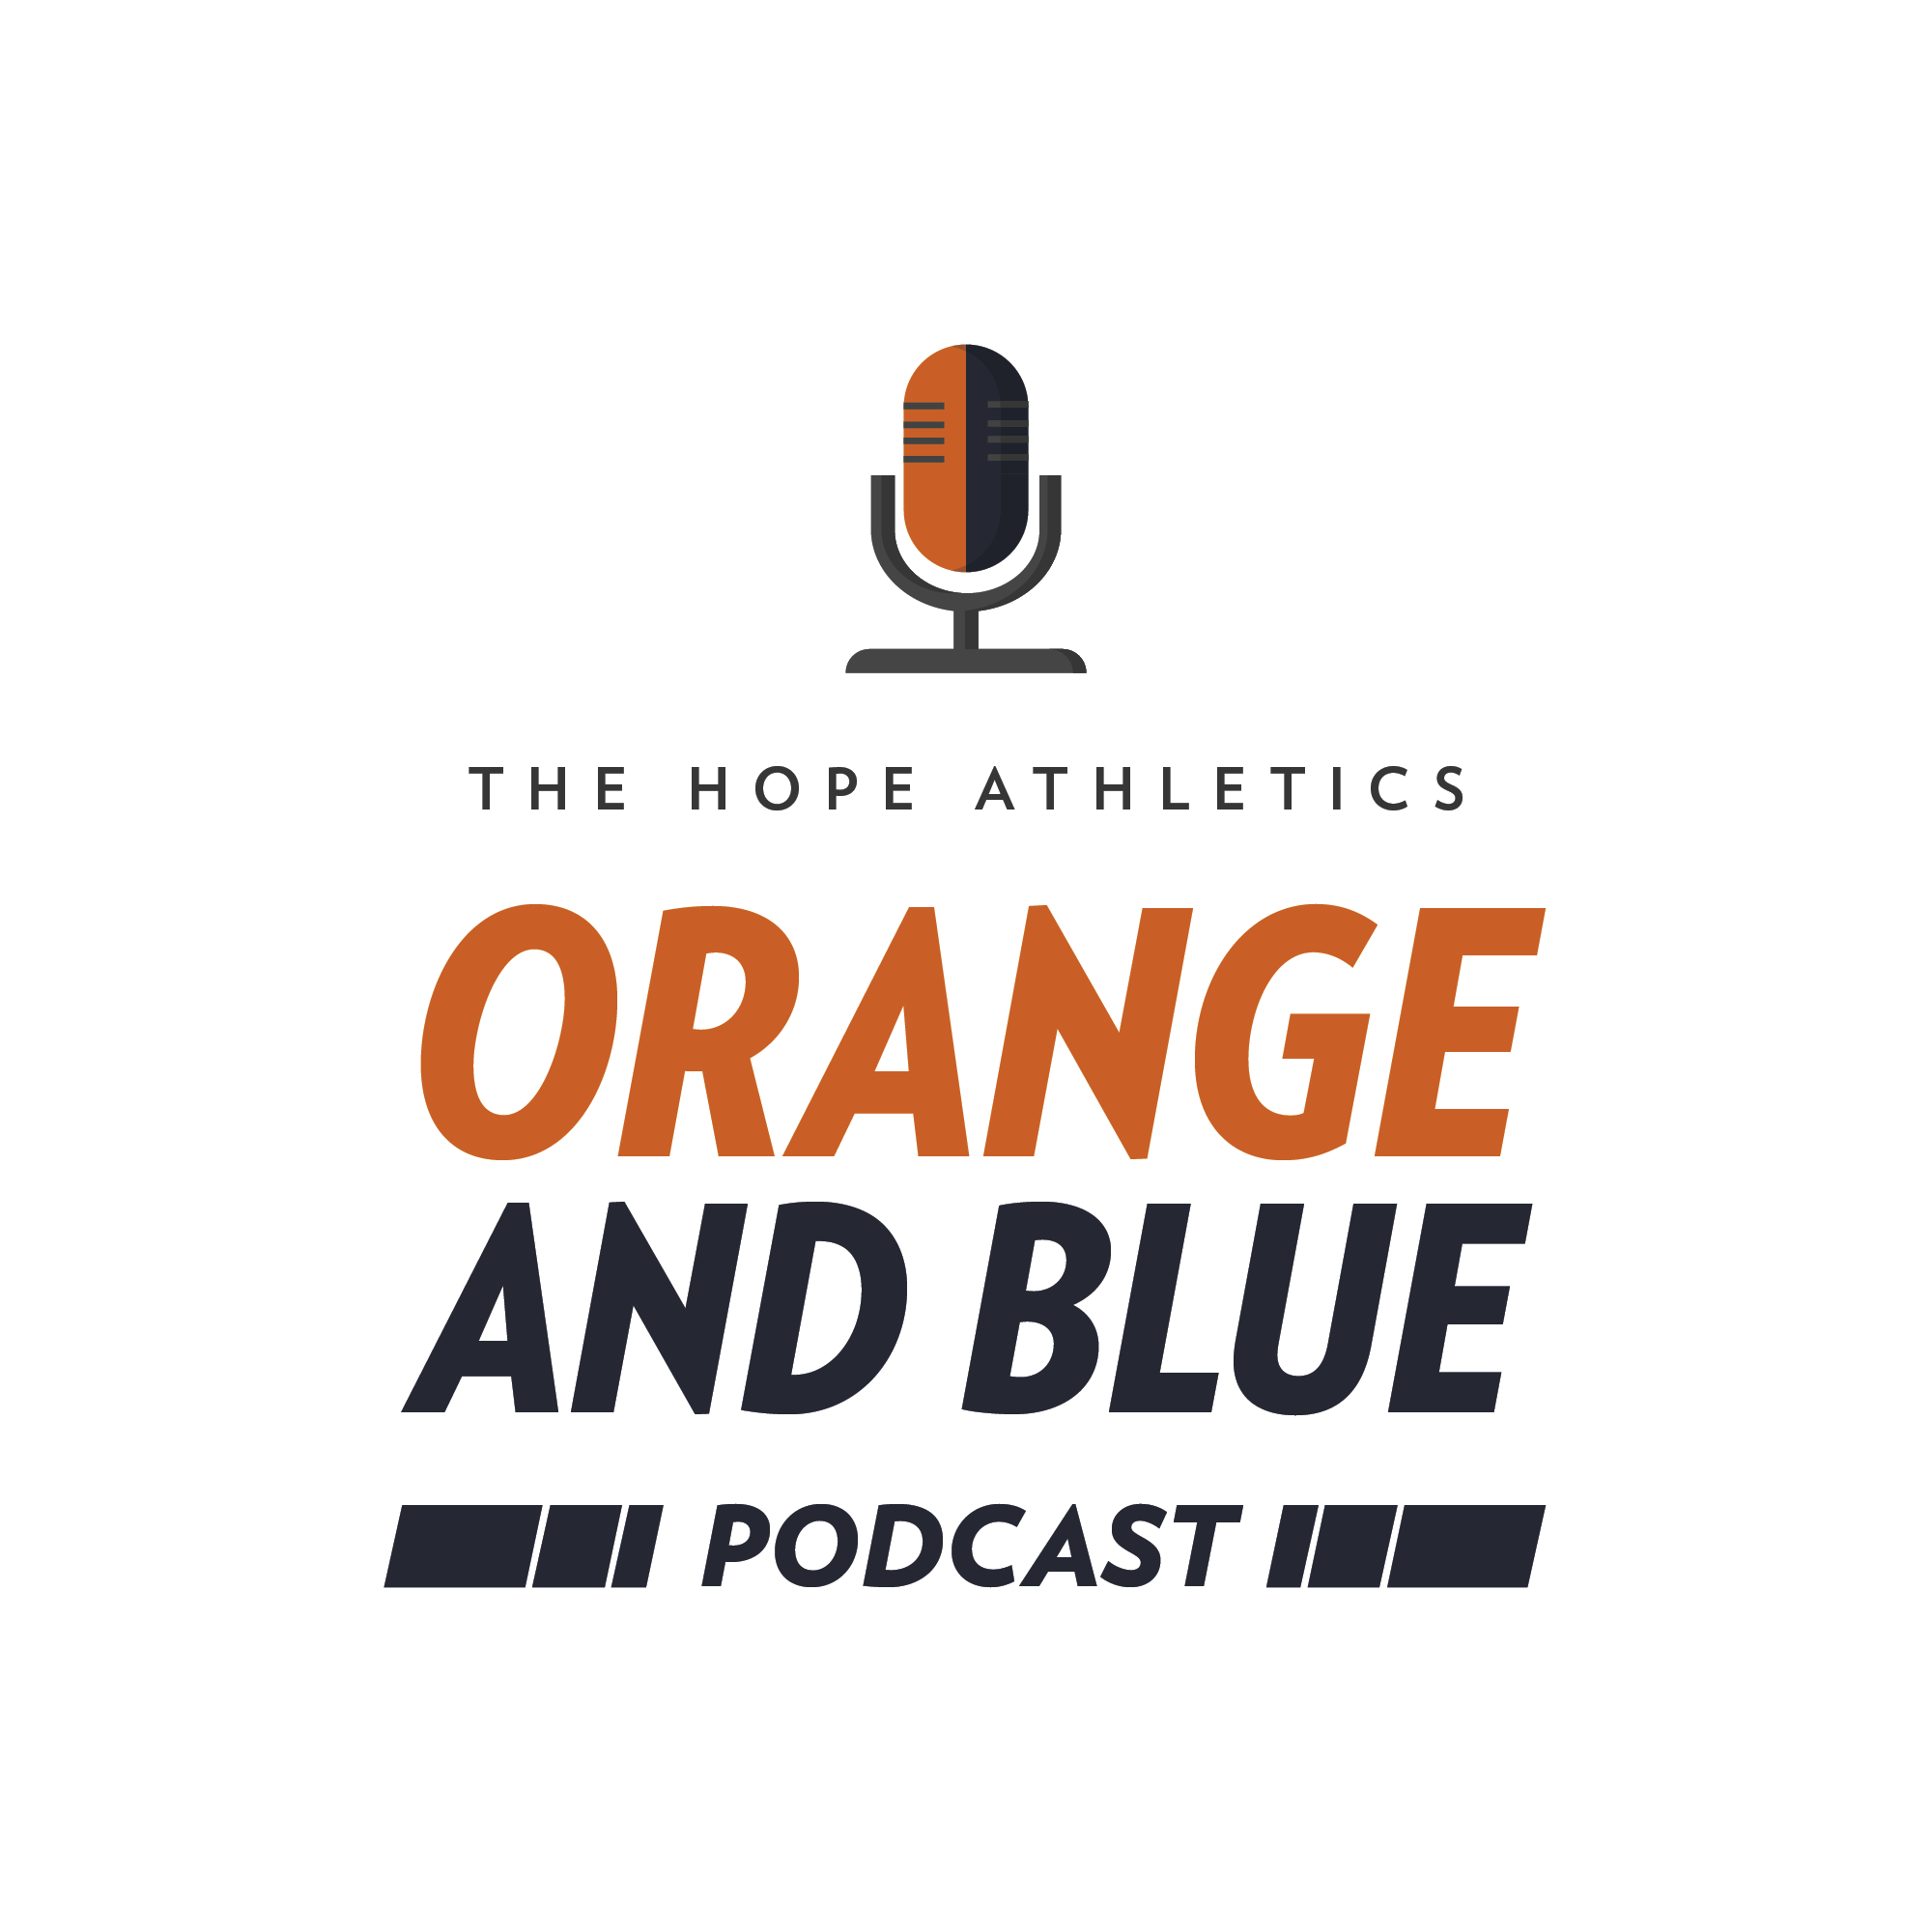 The Hope Athletics Orange and Blue Podcast